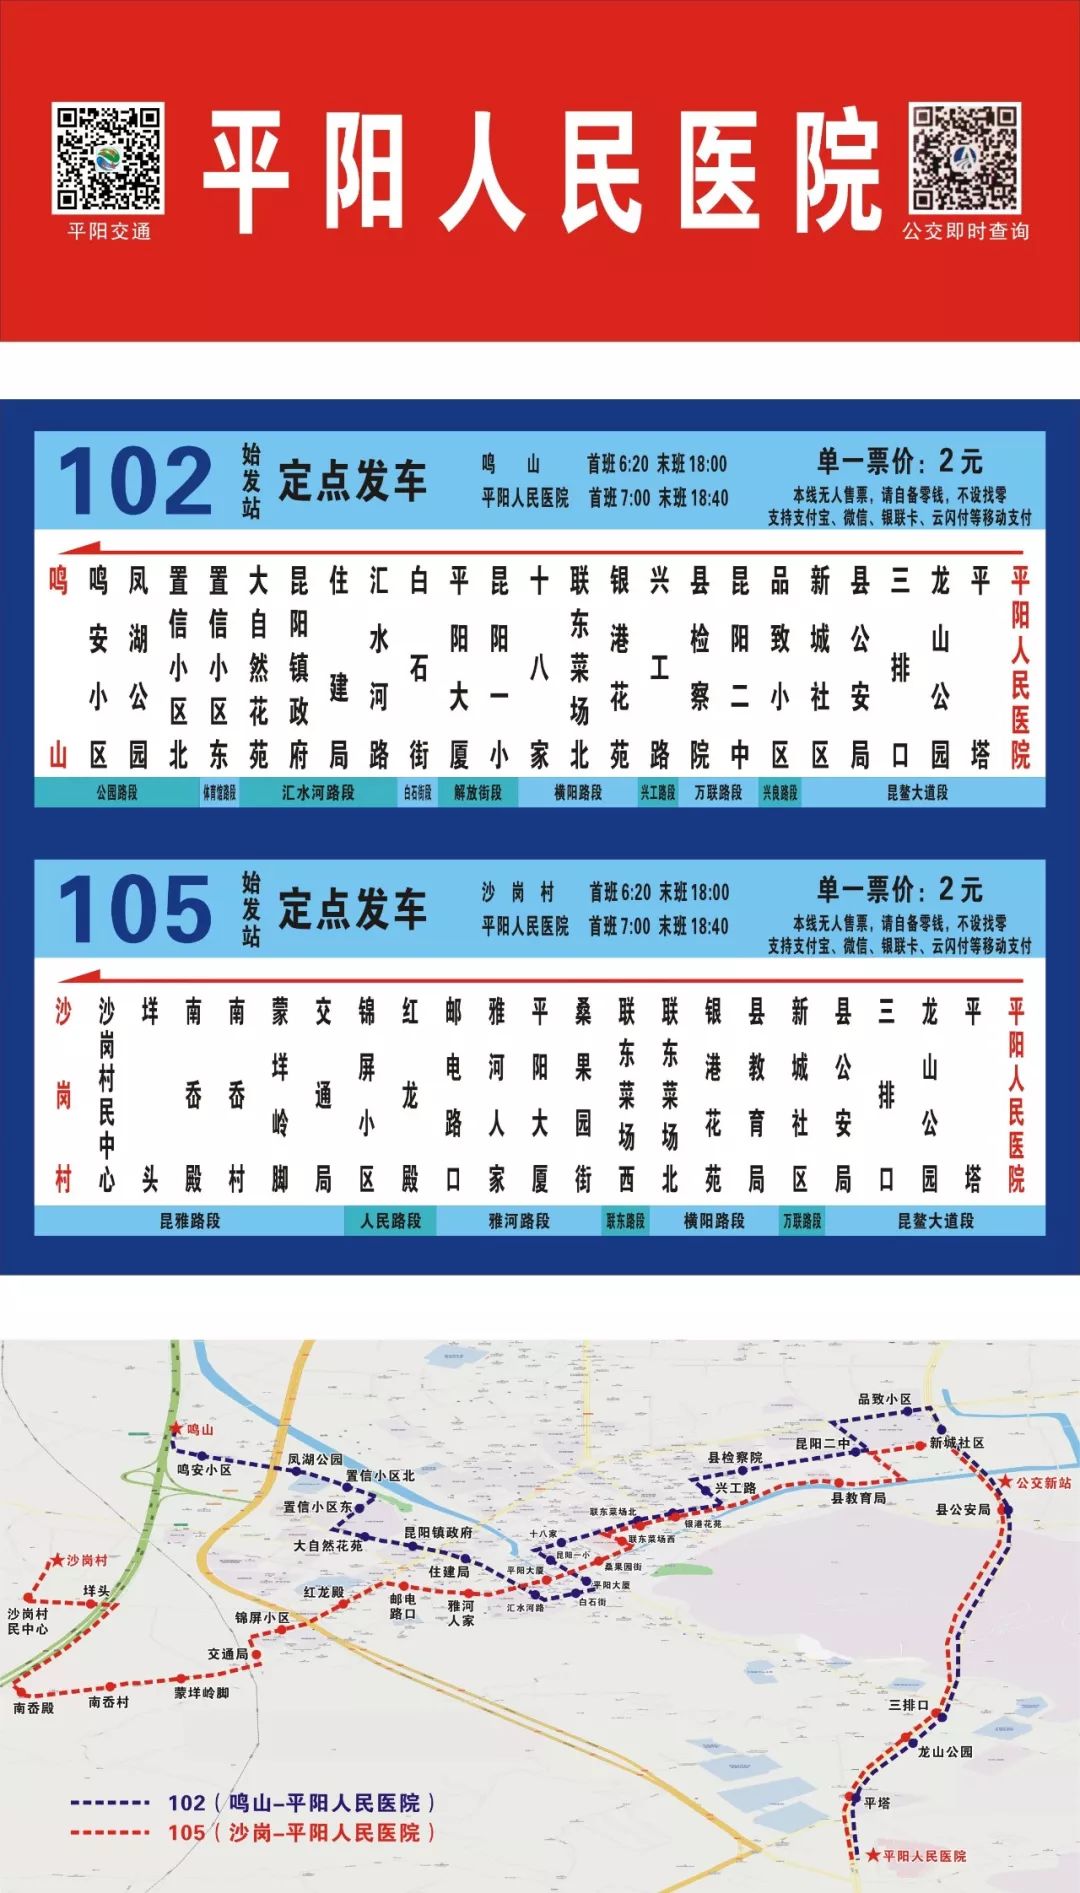 105路公交车路线路线图图片